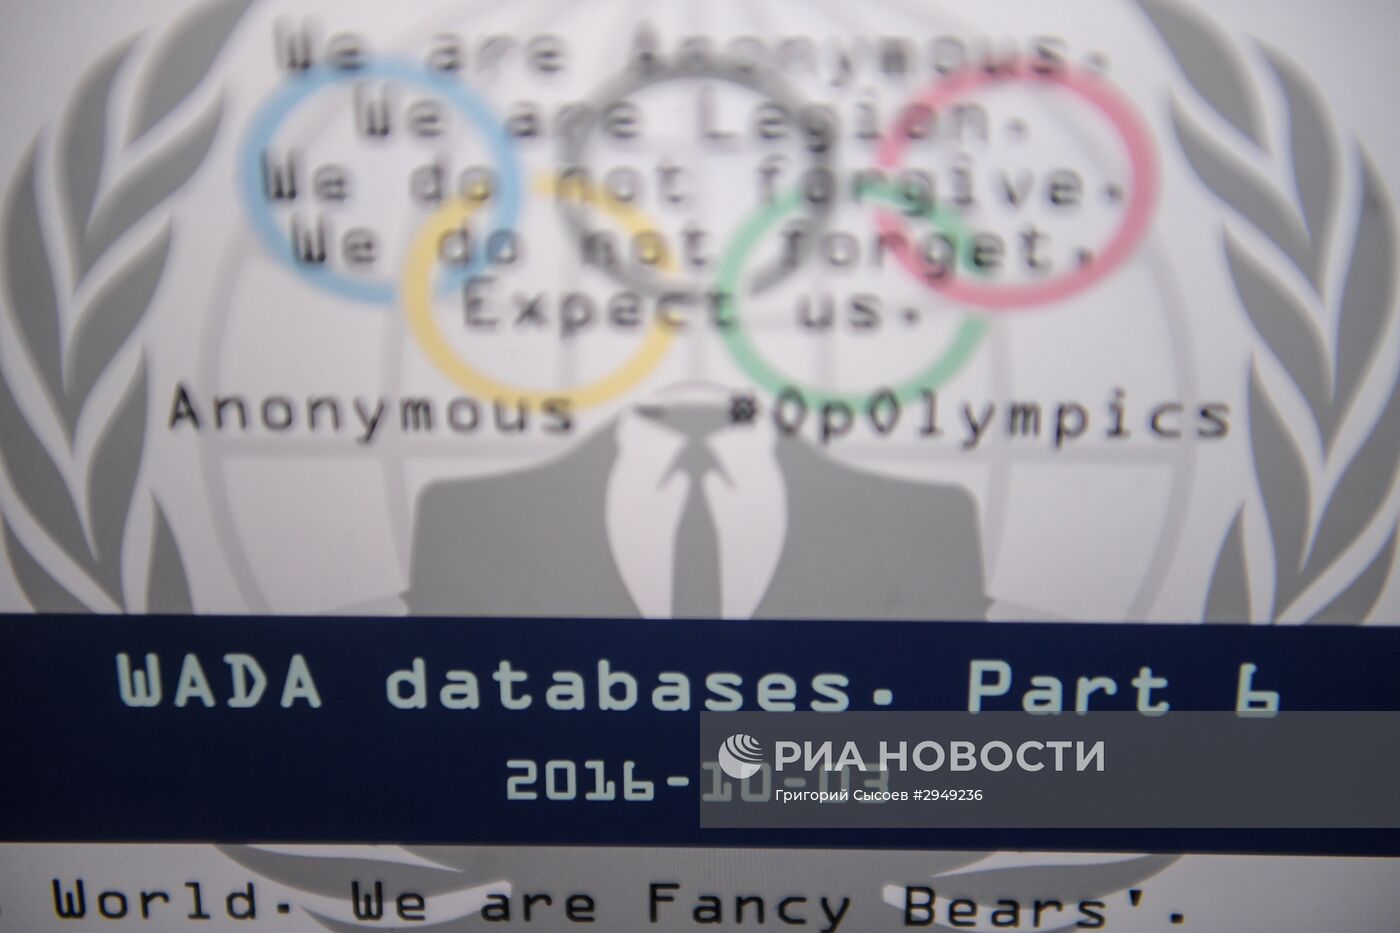 Хакеры из Fancy Bears опубликовали шестую часть документов из базы данных WADA